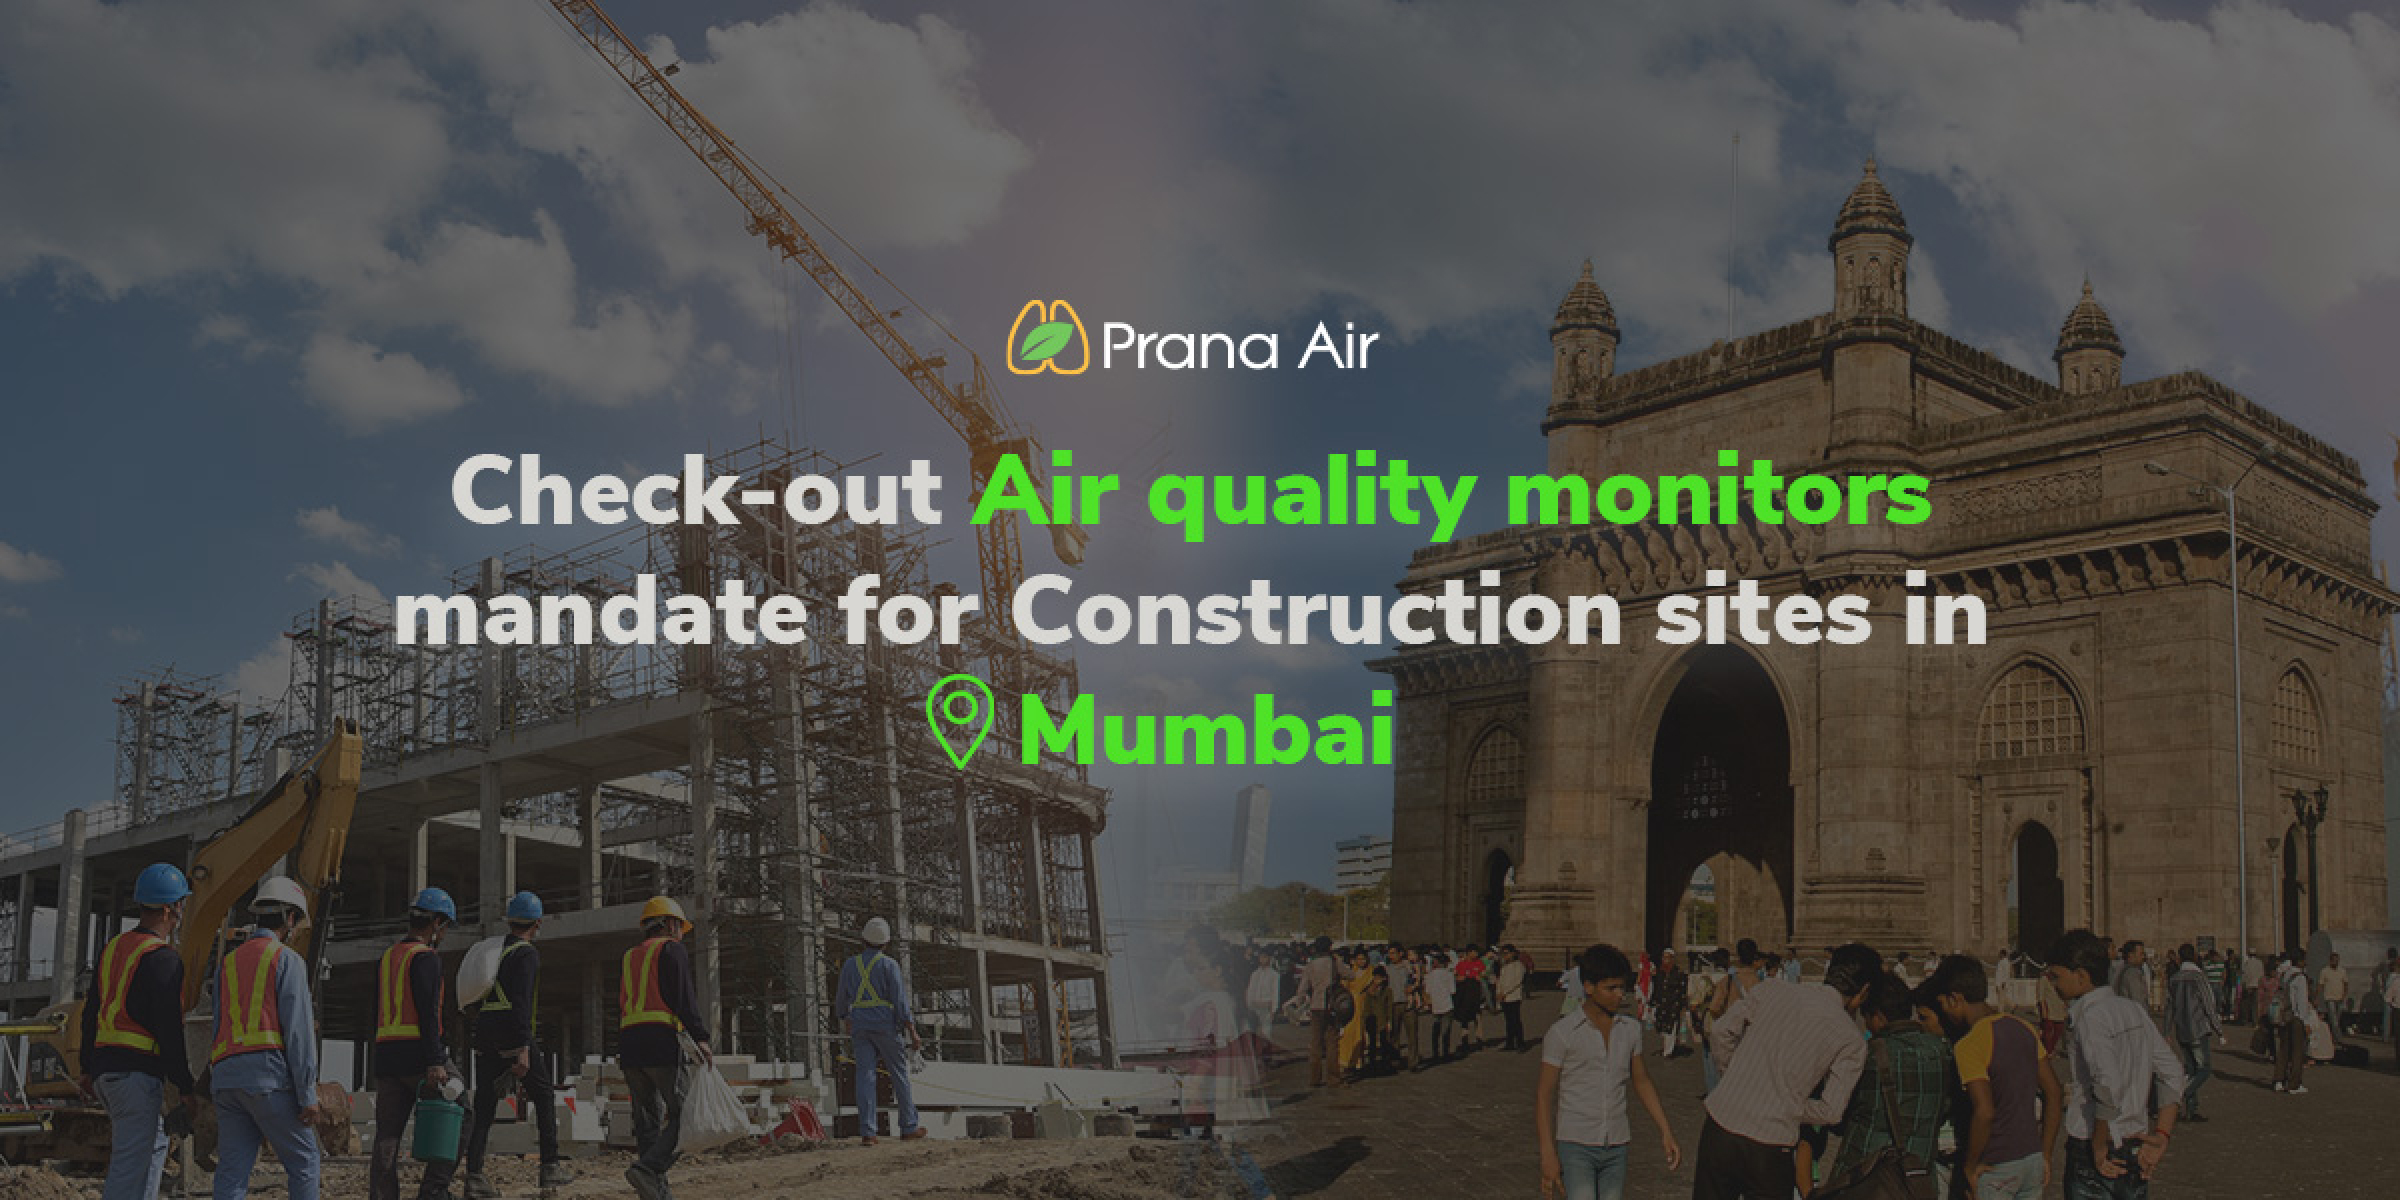 Construction sites in Mumbai